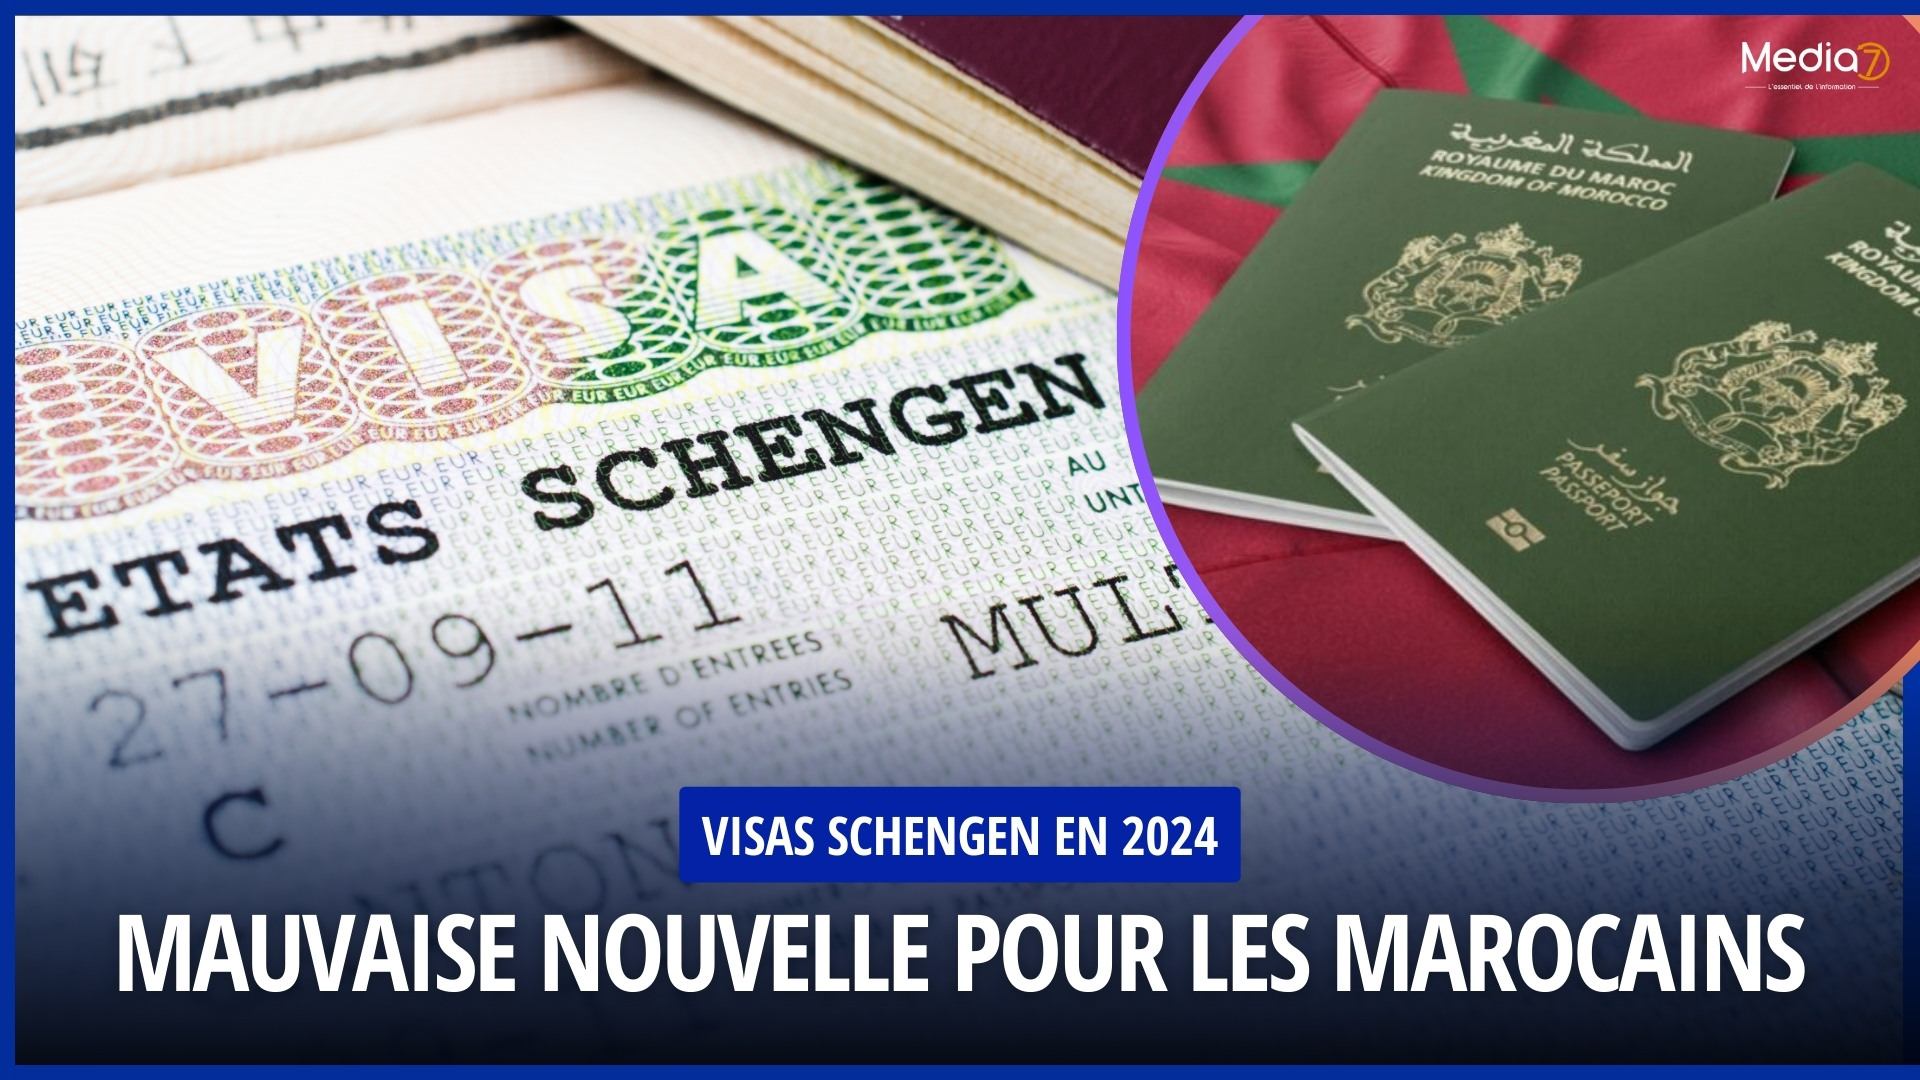 Visas Schengen en 2024